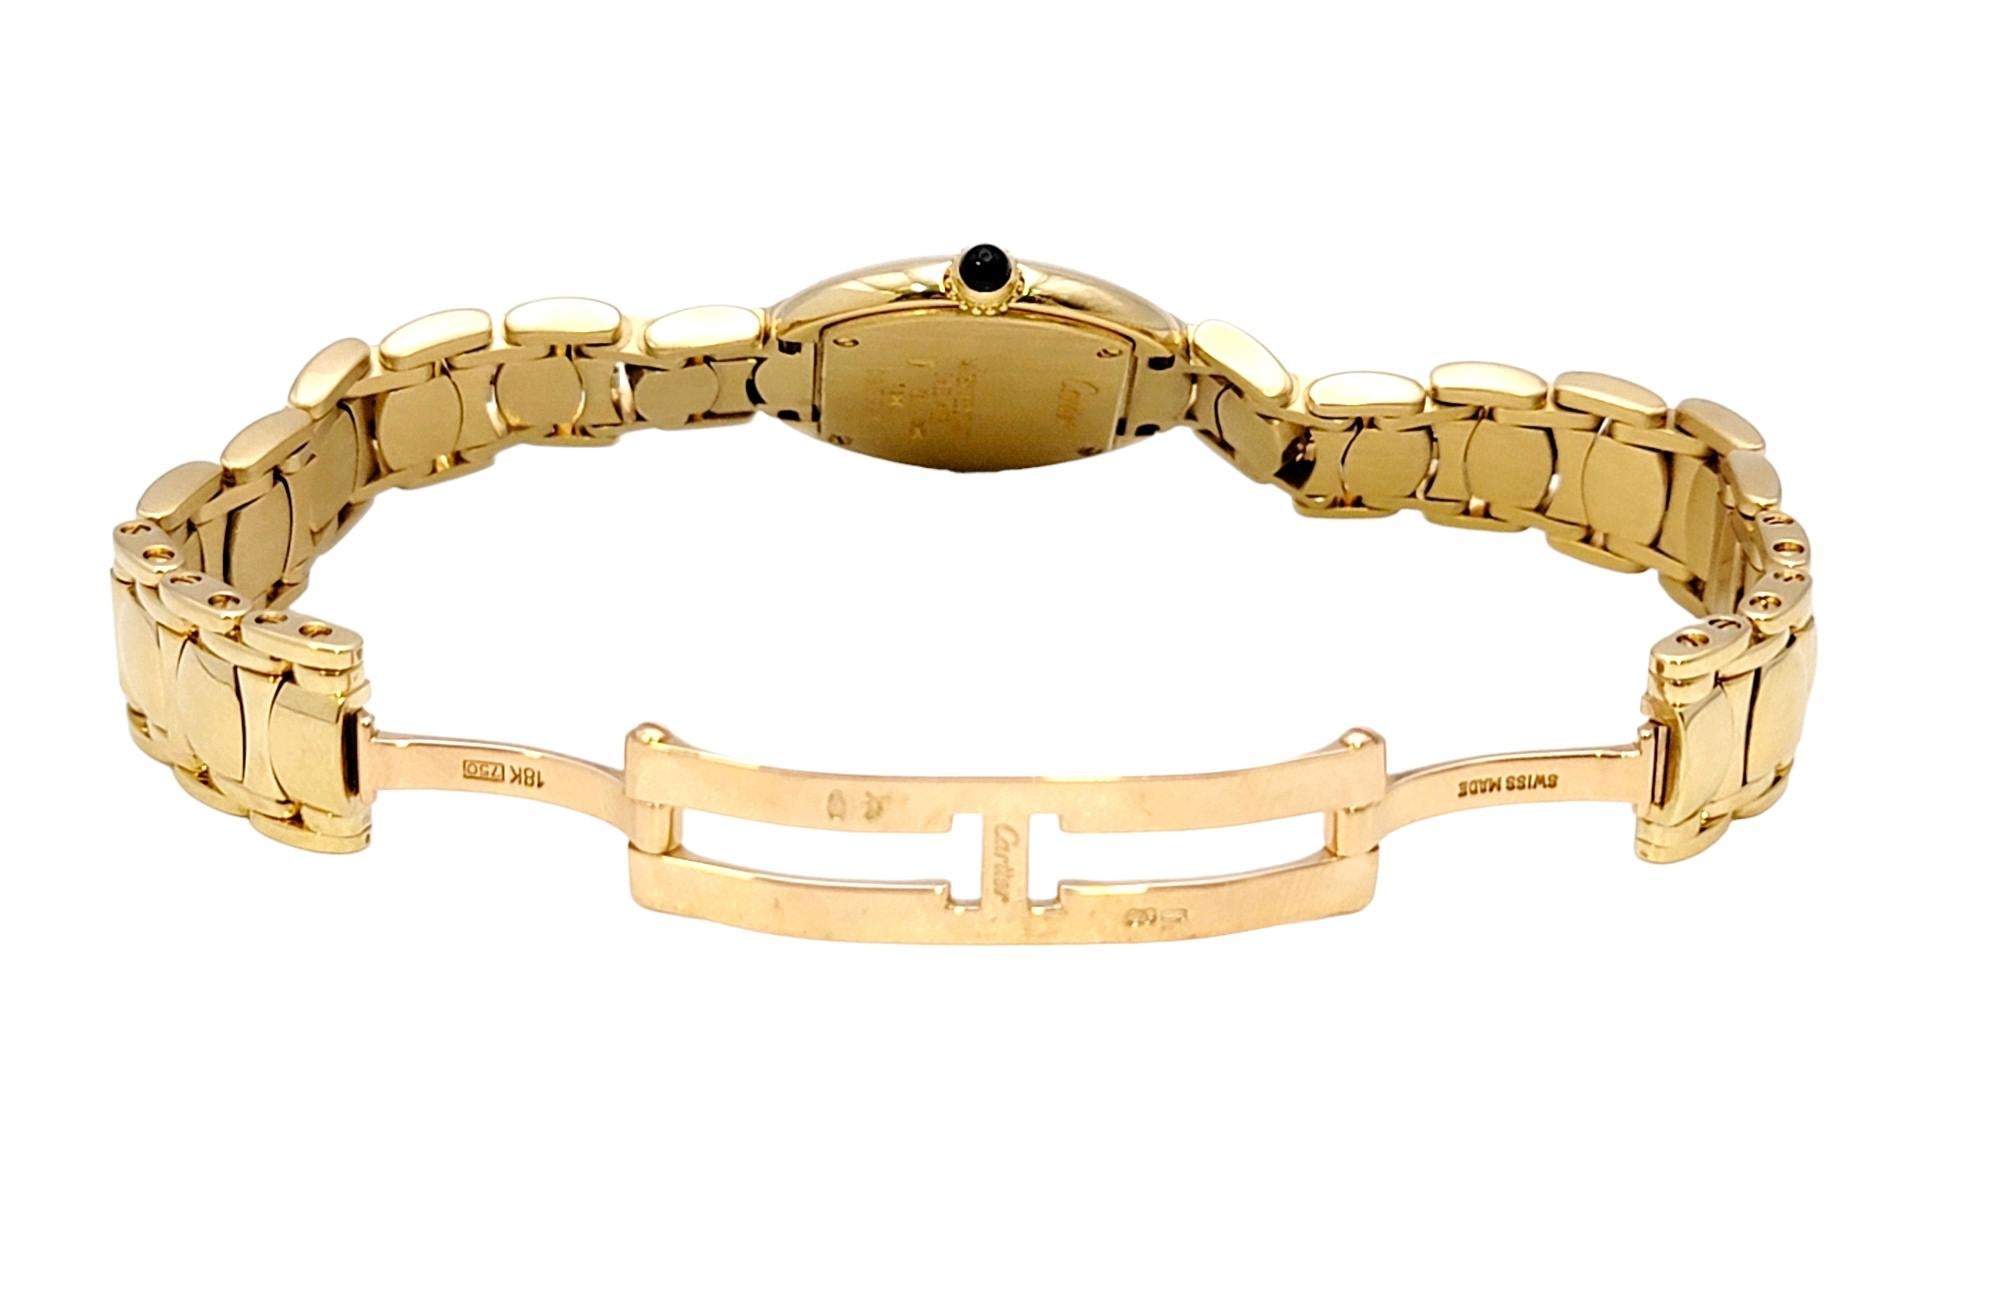 Vintage Cartier Ladies Ellipse Wristwatch in 18 Karat Yellow Gold For Sale 1